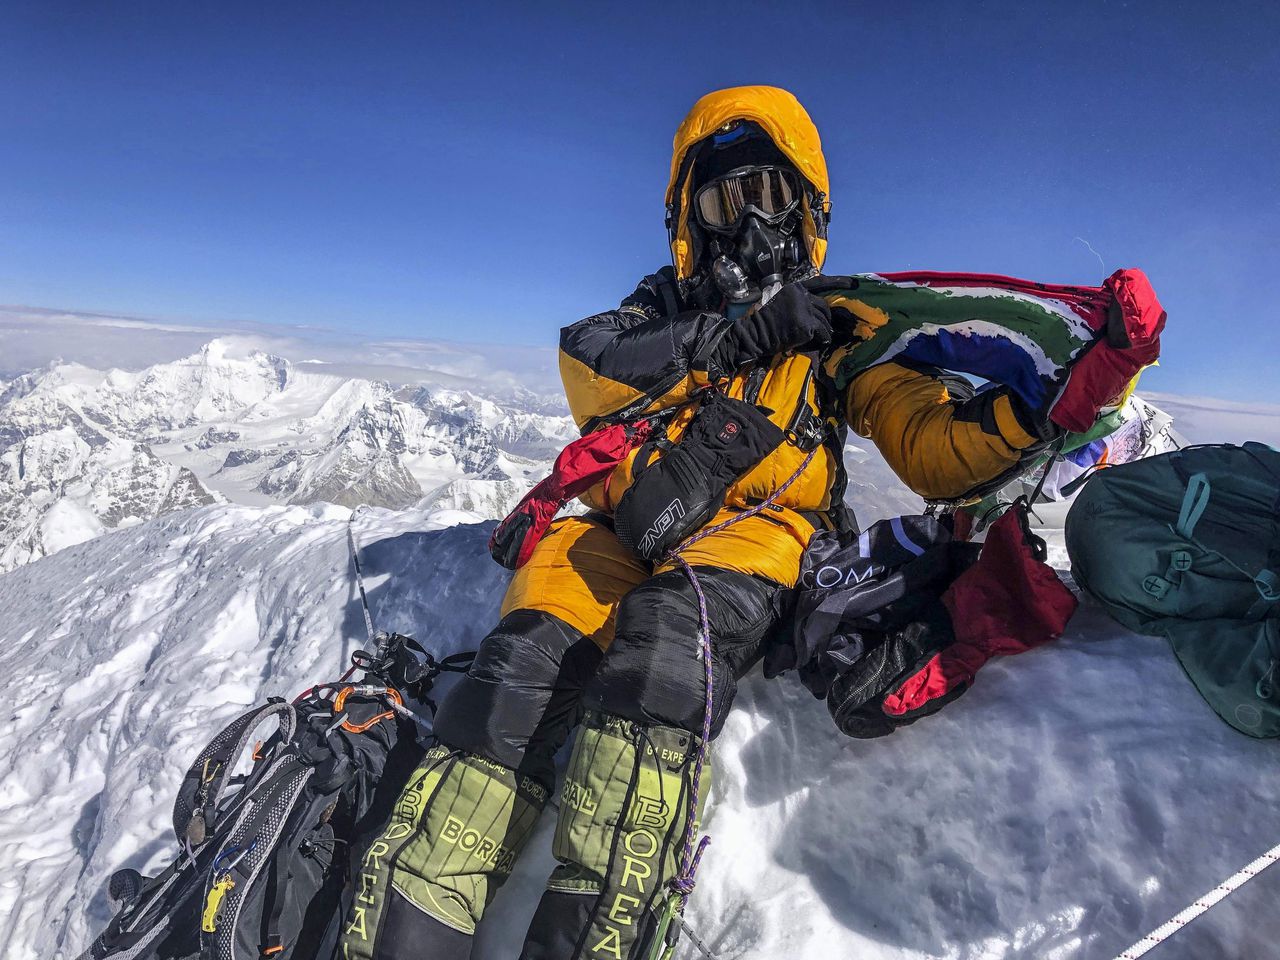 De Zuid-Afrikaanse klimmer Saray Khumalo op de top van de Mount Everest, op 19 mei 2019. Zij is de eerste zwarte Afrikaanse vrouw die dit lukte.